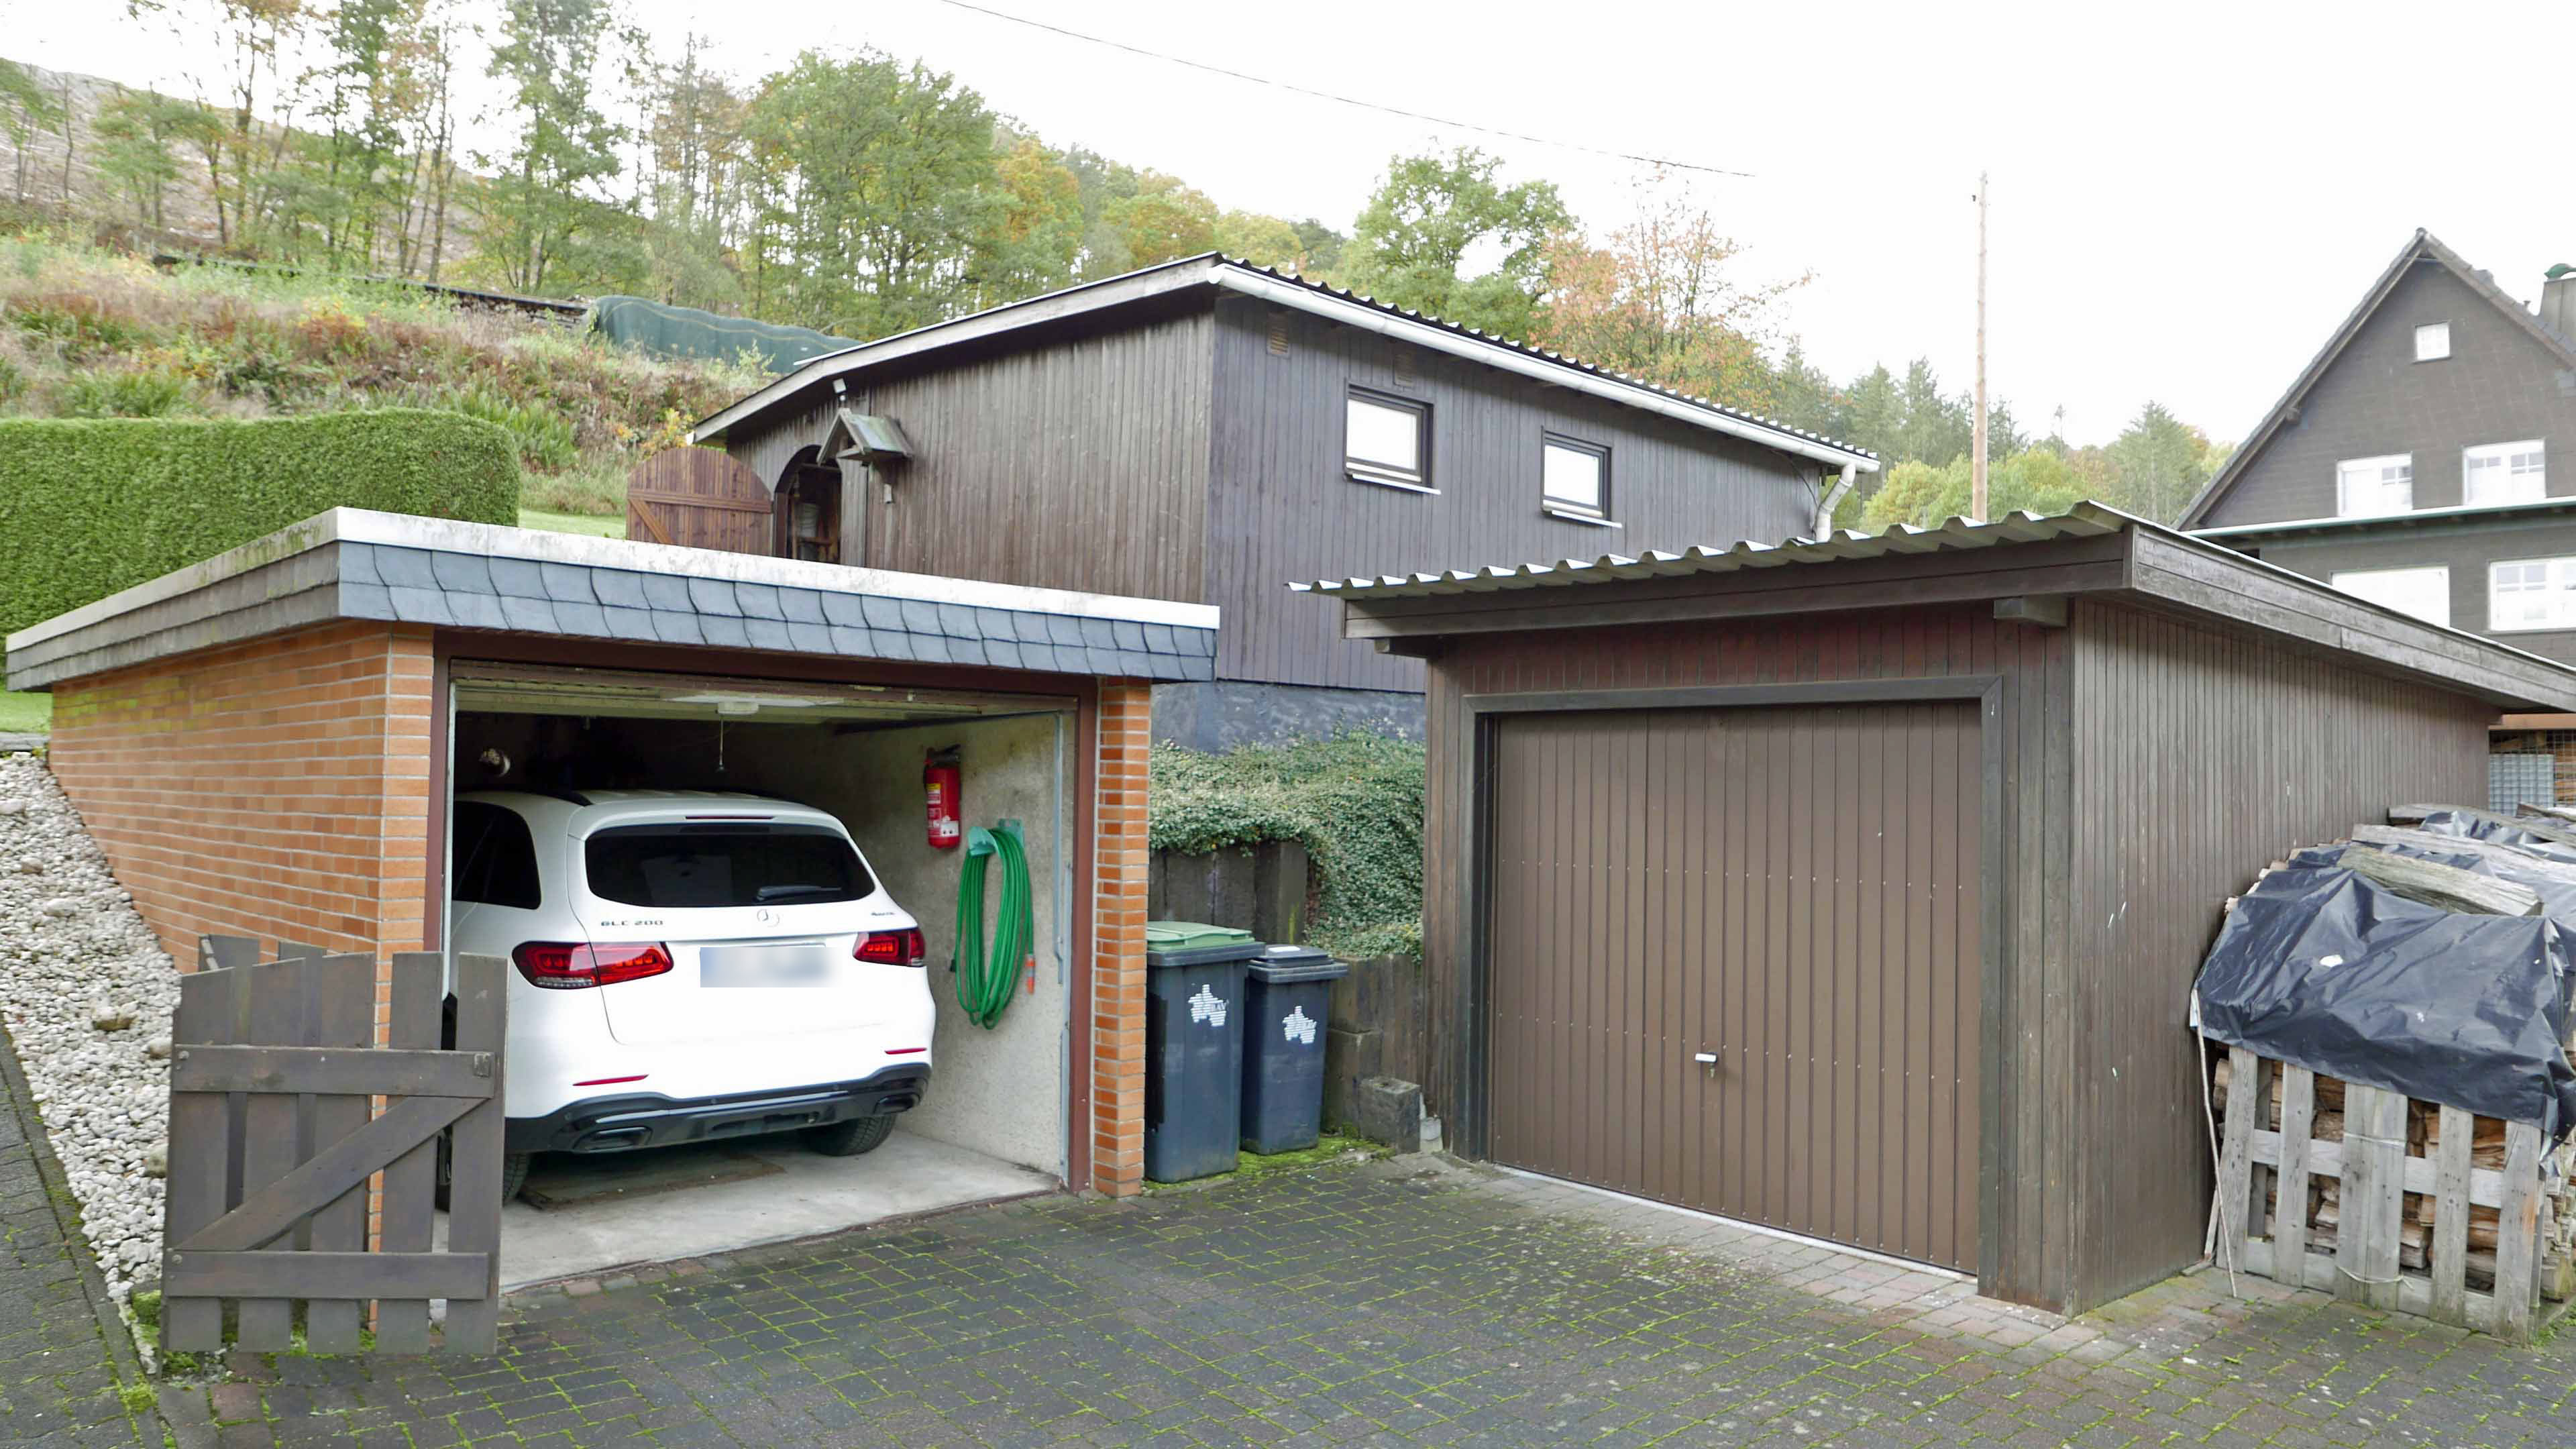 Morsbach: Perfekt für das Landleben in der Natur, Vorderbereich mit zwei Garagen und Werkstatt